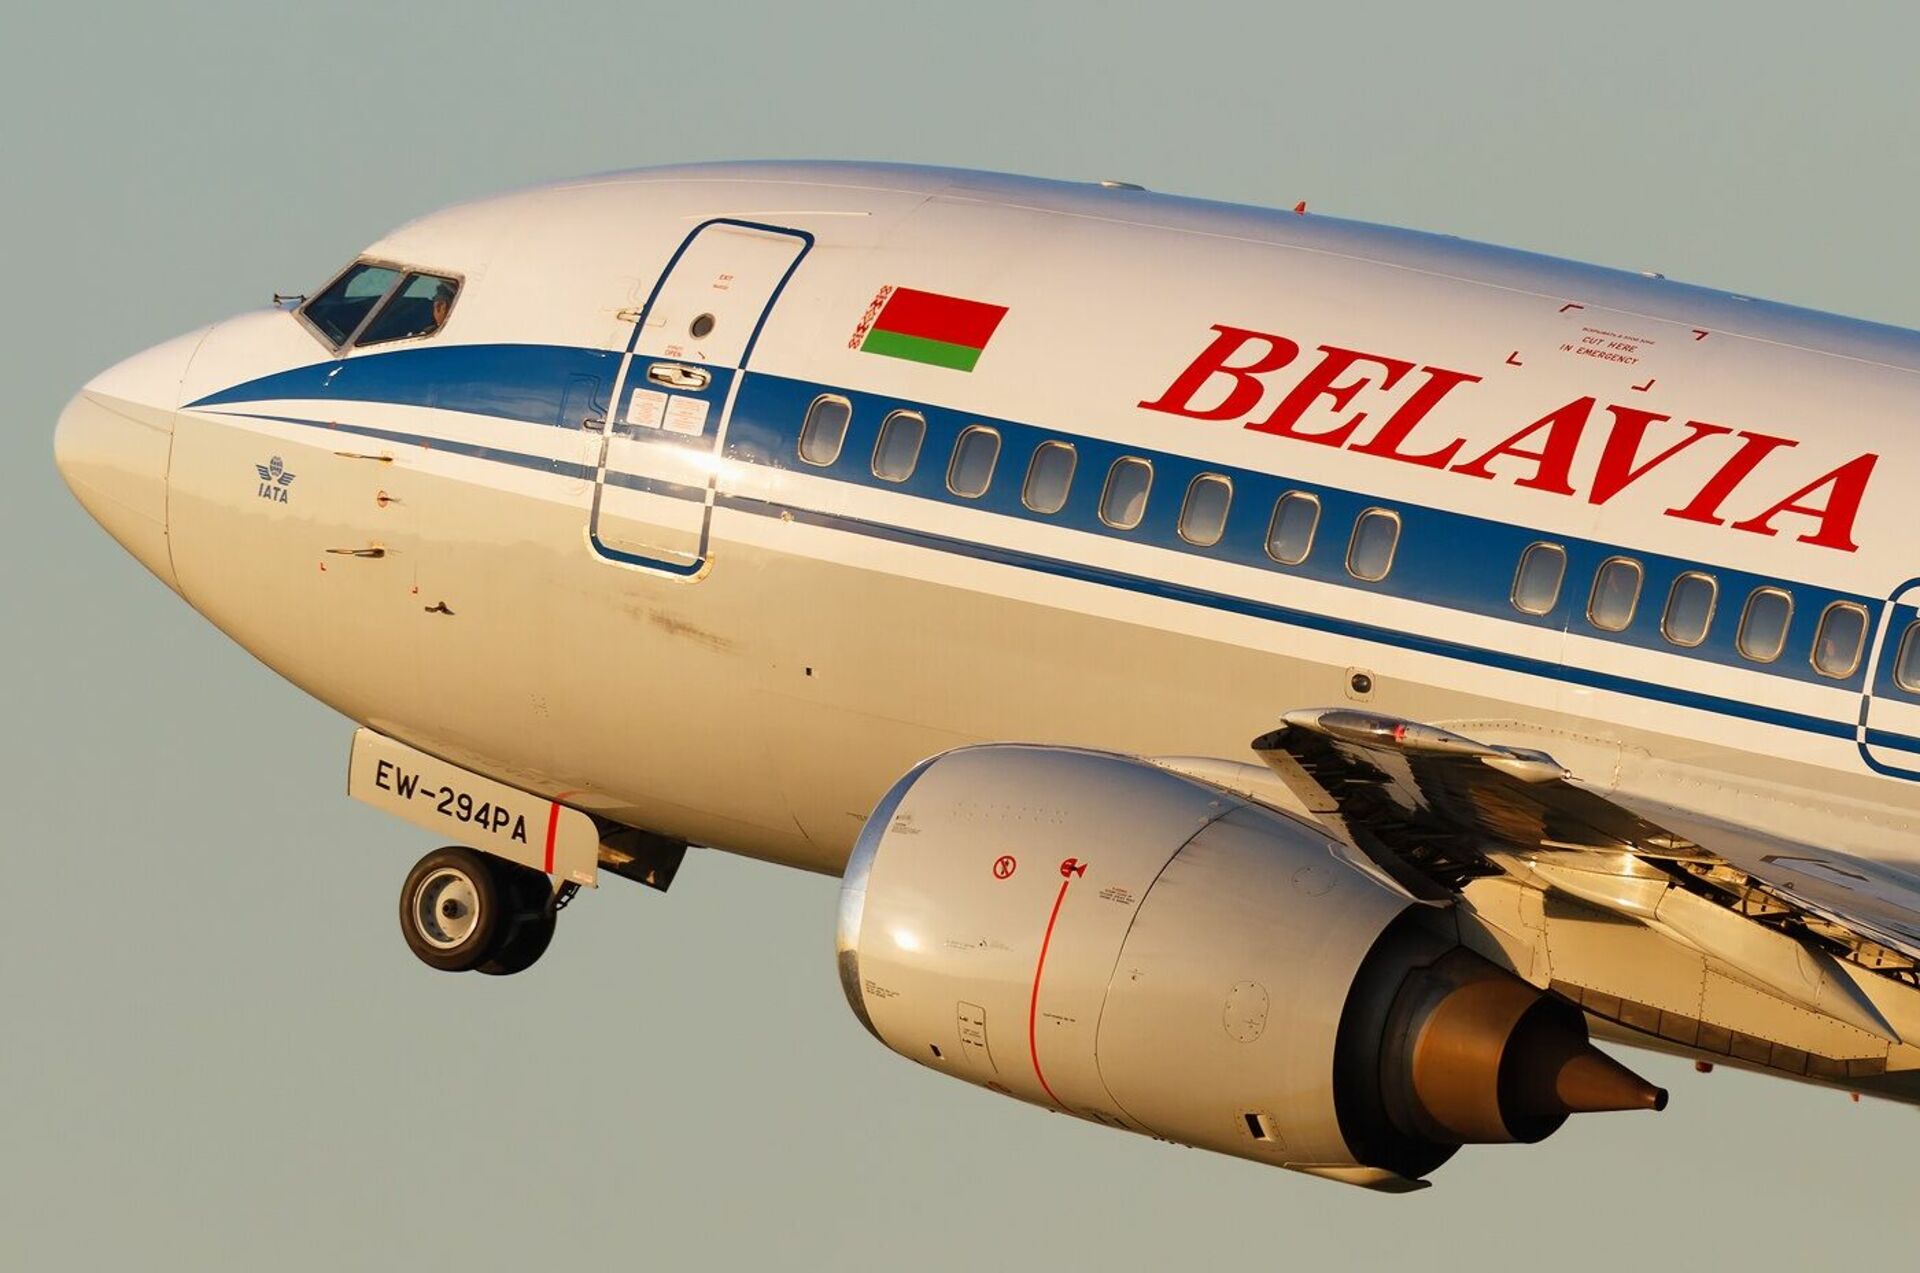 Сайт белавиа минск. Авиакомпания Белавиа самолеты. Белавиа-Белорусские авиалинии. Белавиа 1996. Самолеты белорусских авиалиний.